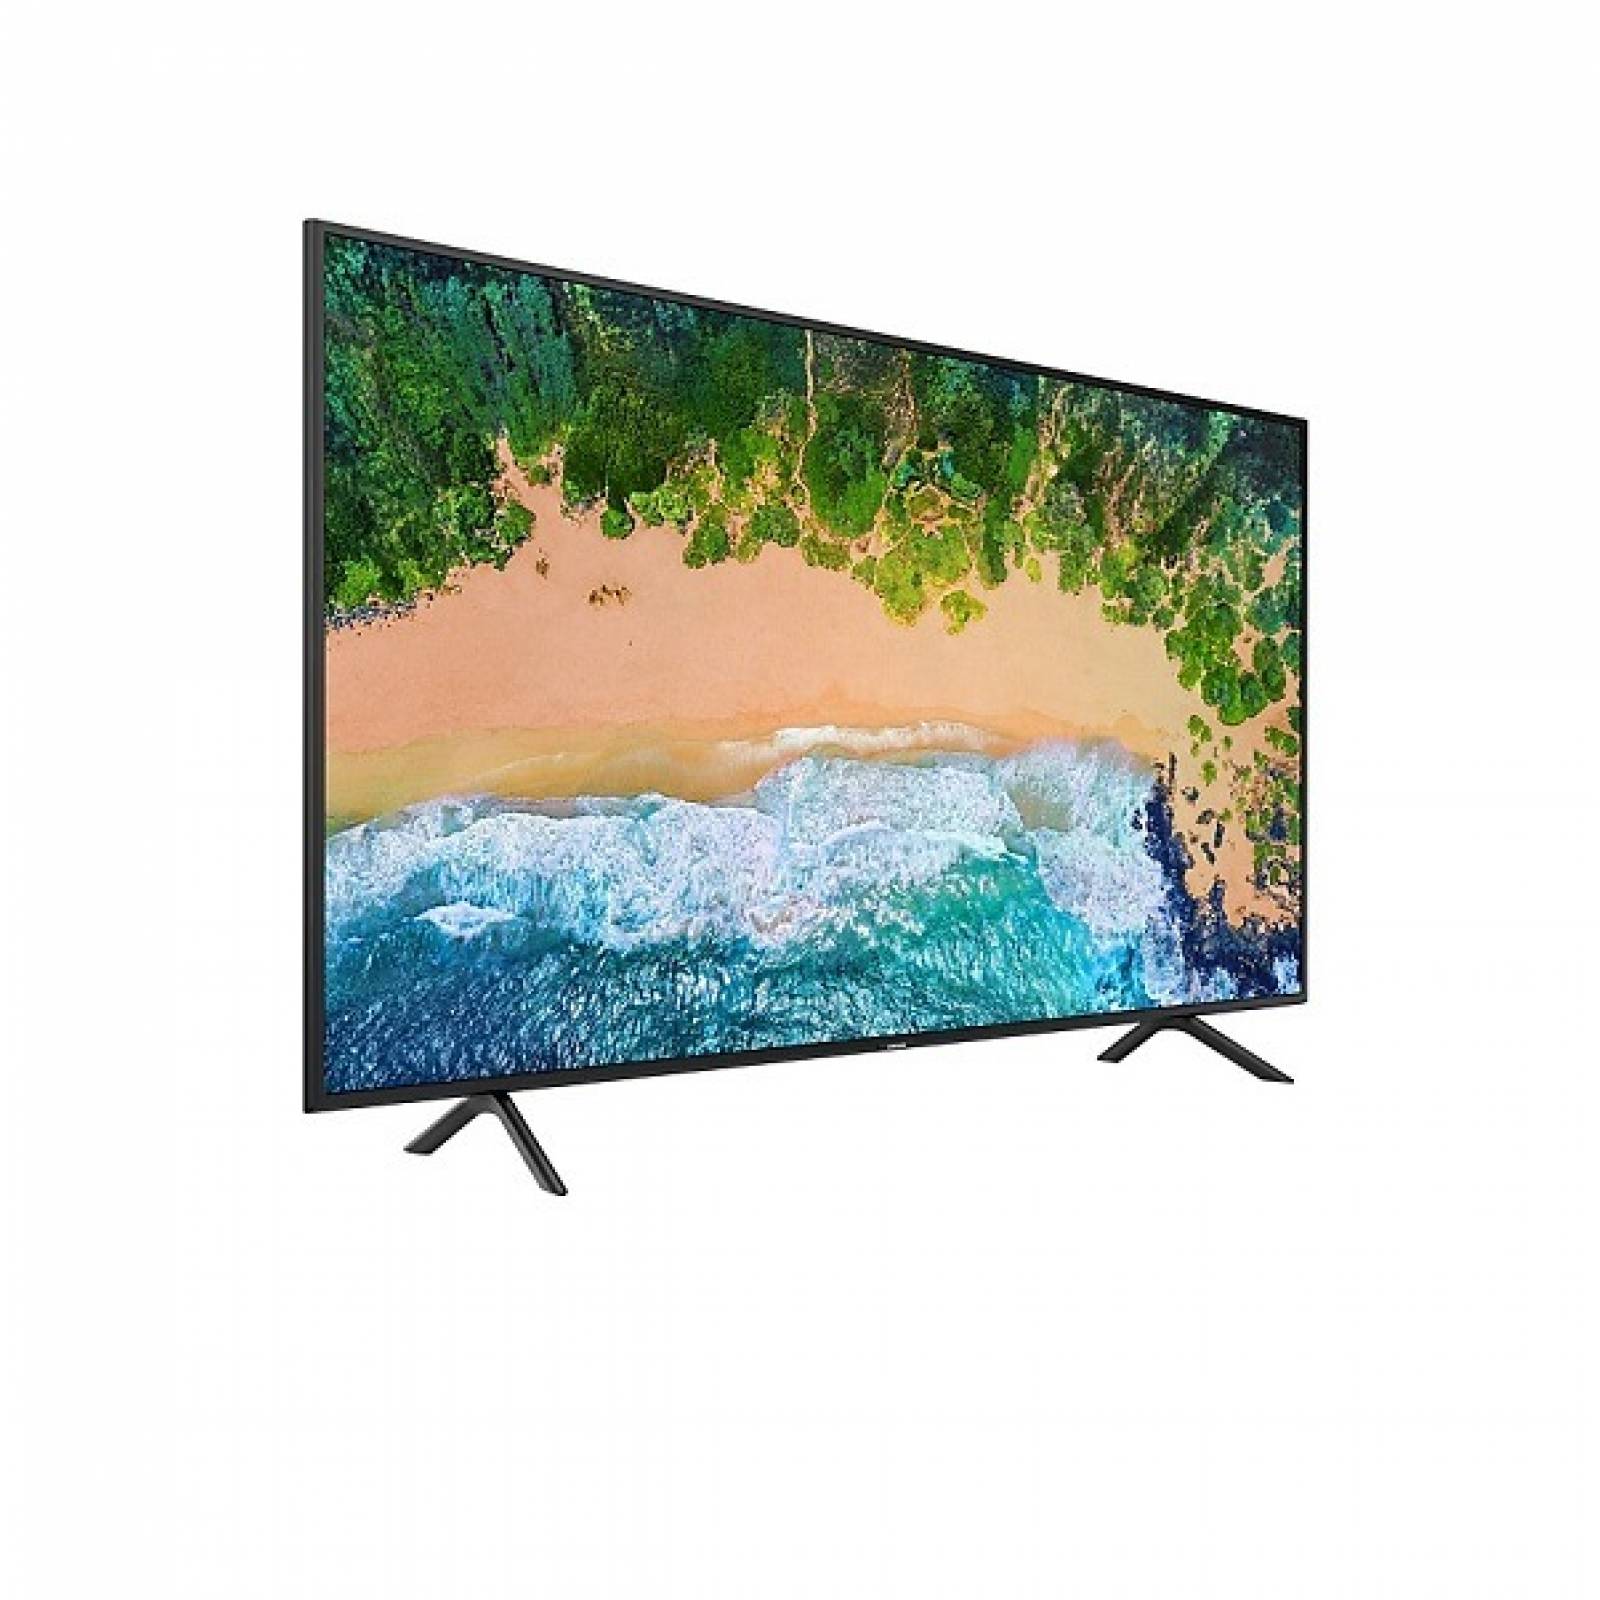 Smart TV Samsung 43 LED 4K HDR PurColor UN43RU7100